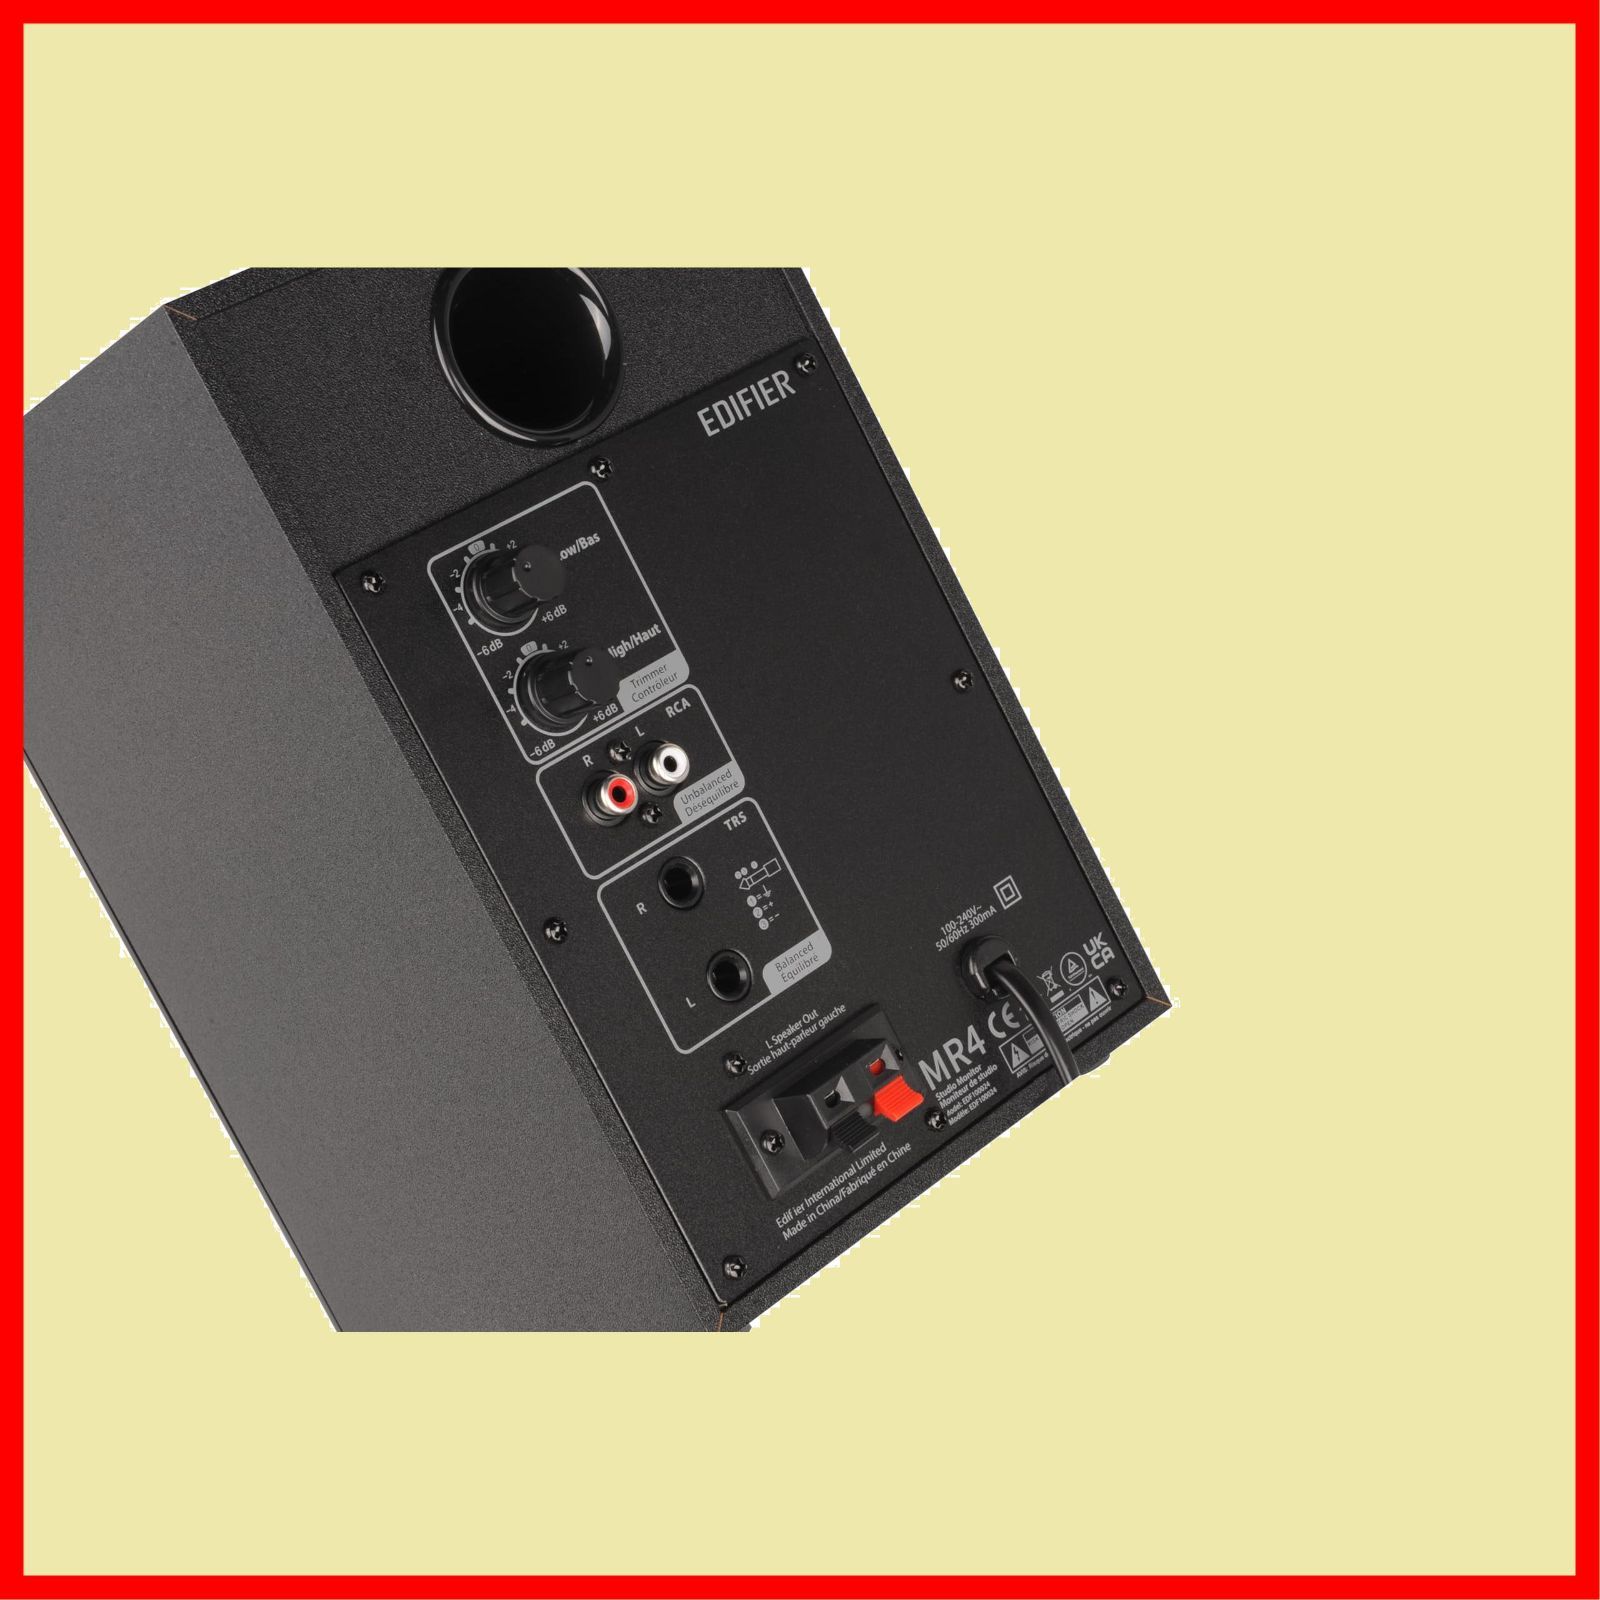 数量限定】Edifier MR4 42W モニタースピーカー、PC dtm 作曲 スタジオモニター用有線外付けスピーカー、TRSバランス/RCA/AUX入力、3.5mm  ヘッドホン端子出力、アンプ内蔵音質高 黒 - メルカリ